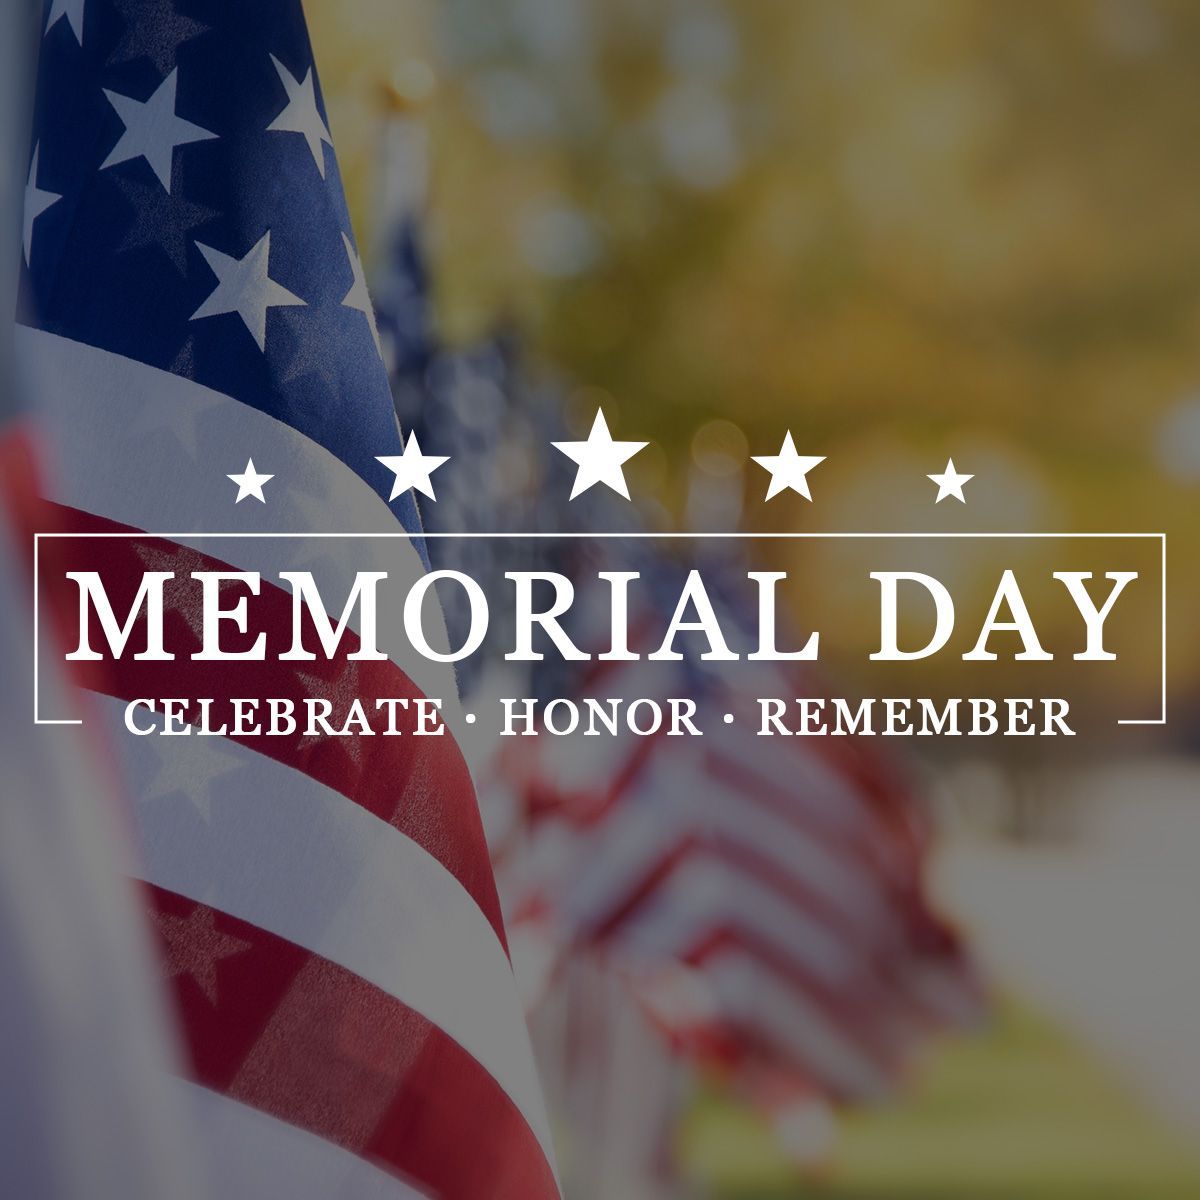 Memorial Day - Celebrate ▪ Honor ▪ Remember